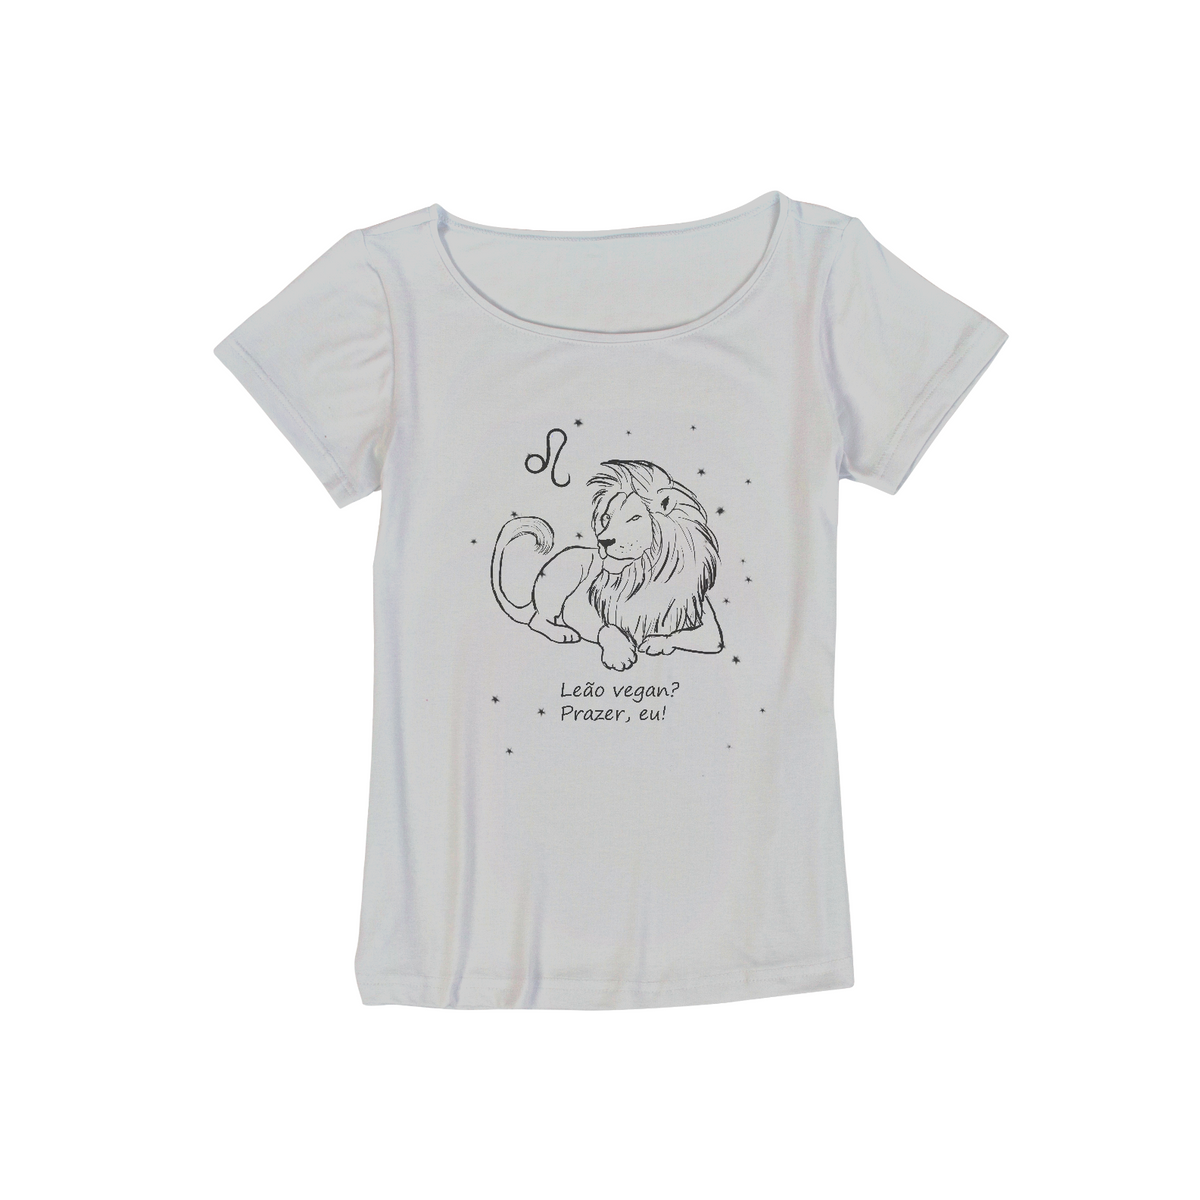 Nome do produto: Camiseta Viscolycra | Leão | Leão vegan? Prazer, eu! | P&B